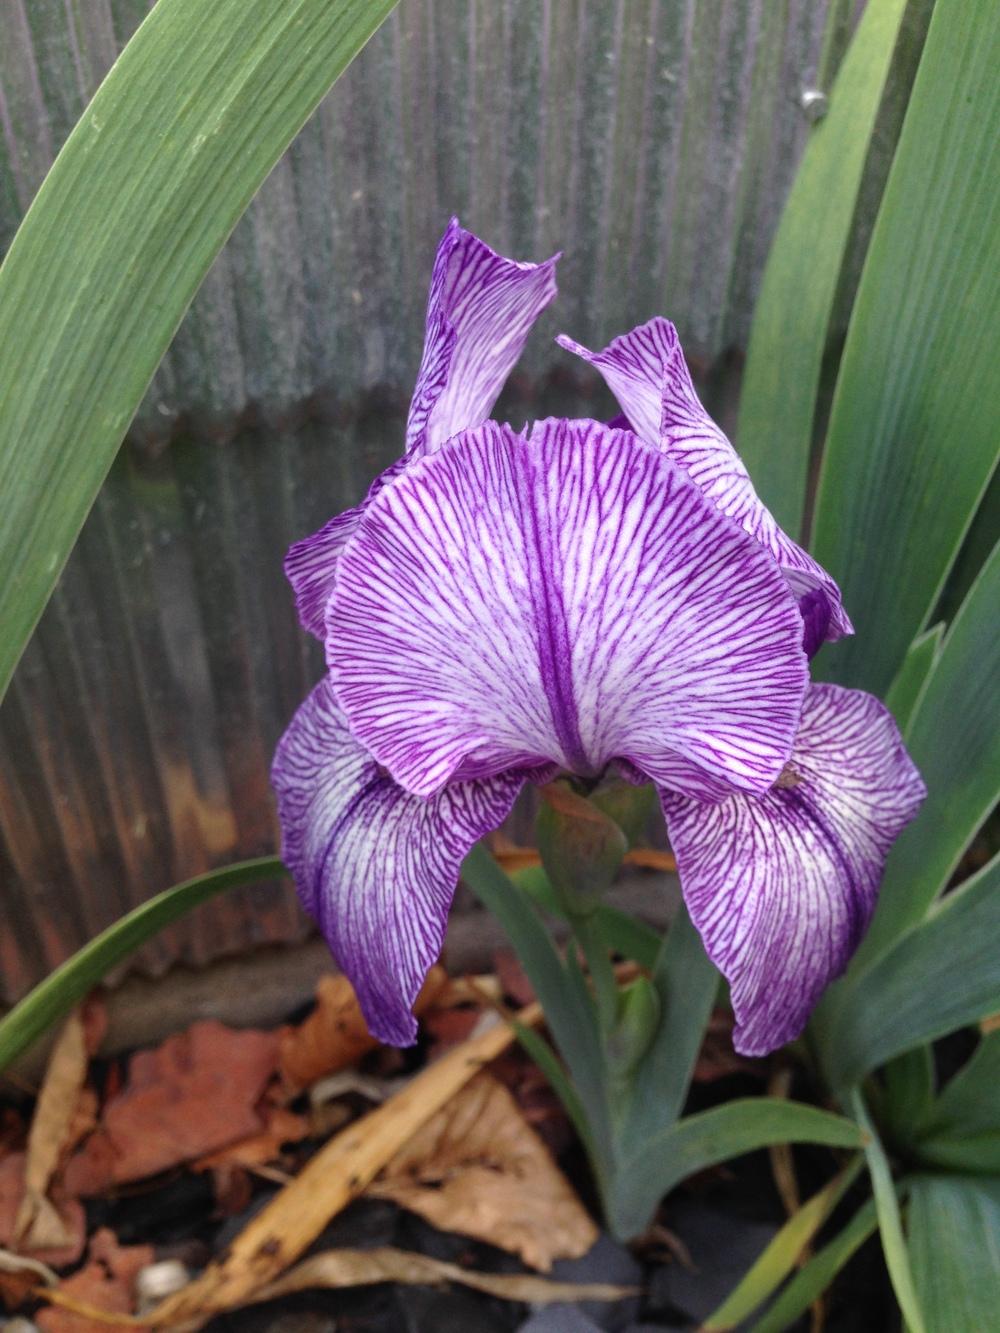 Photo of Arilbred Iris (Iris 'Jonnye's Magic') uploaded by brozeus